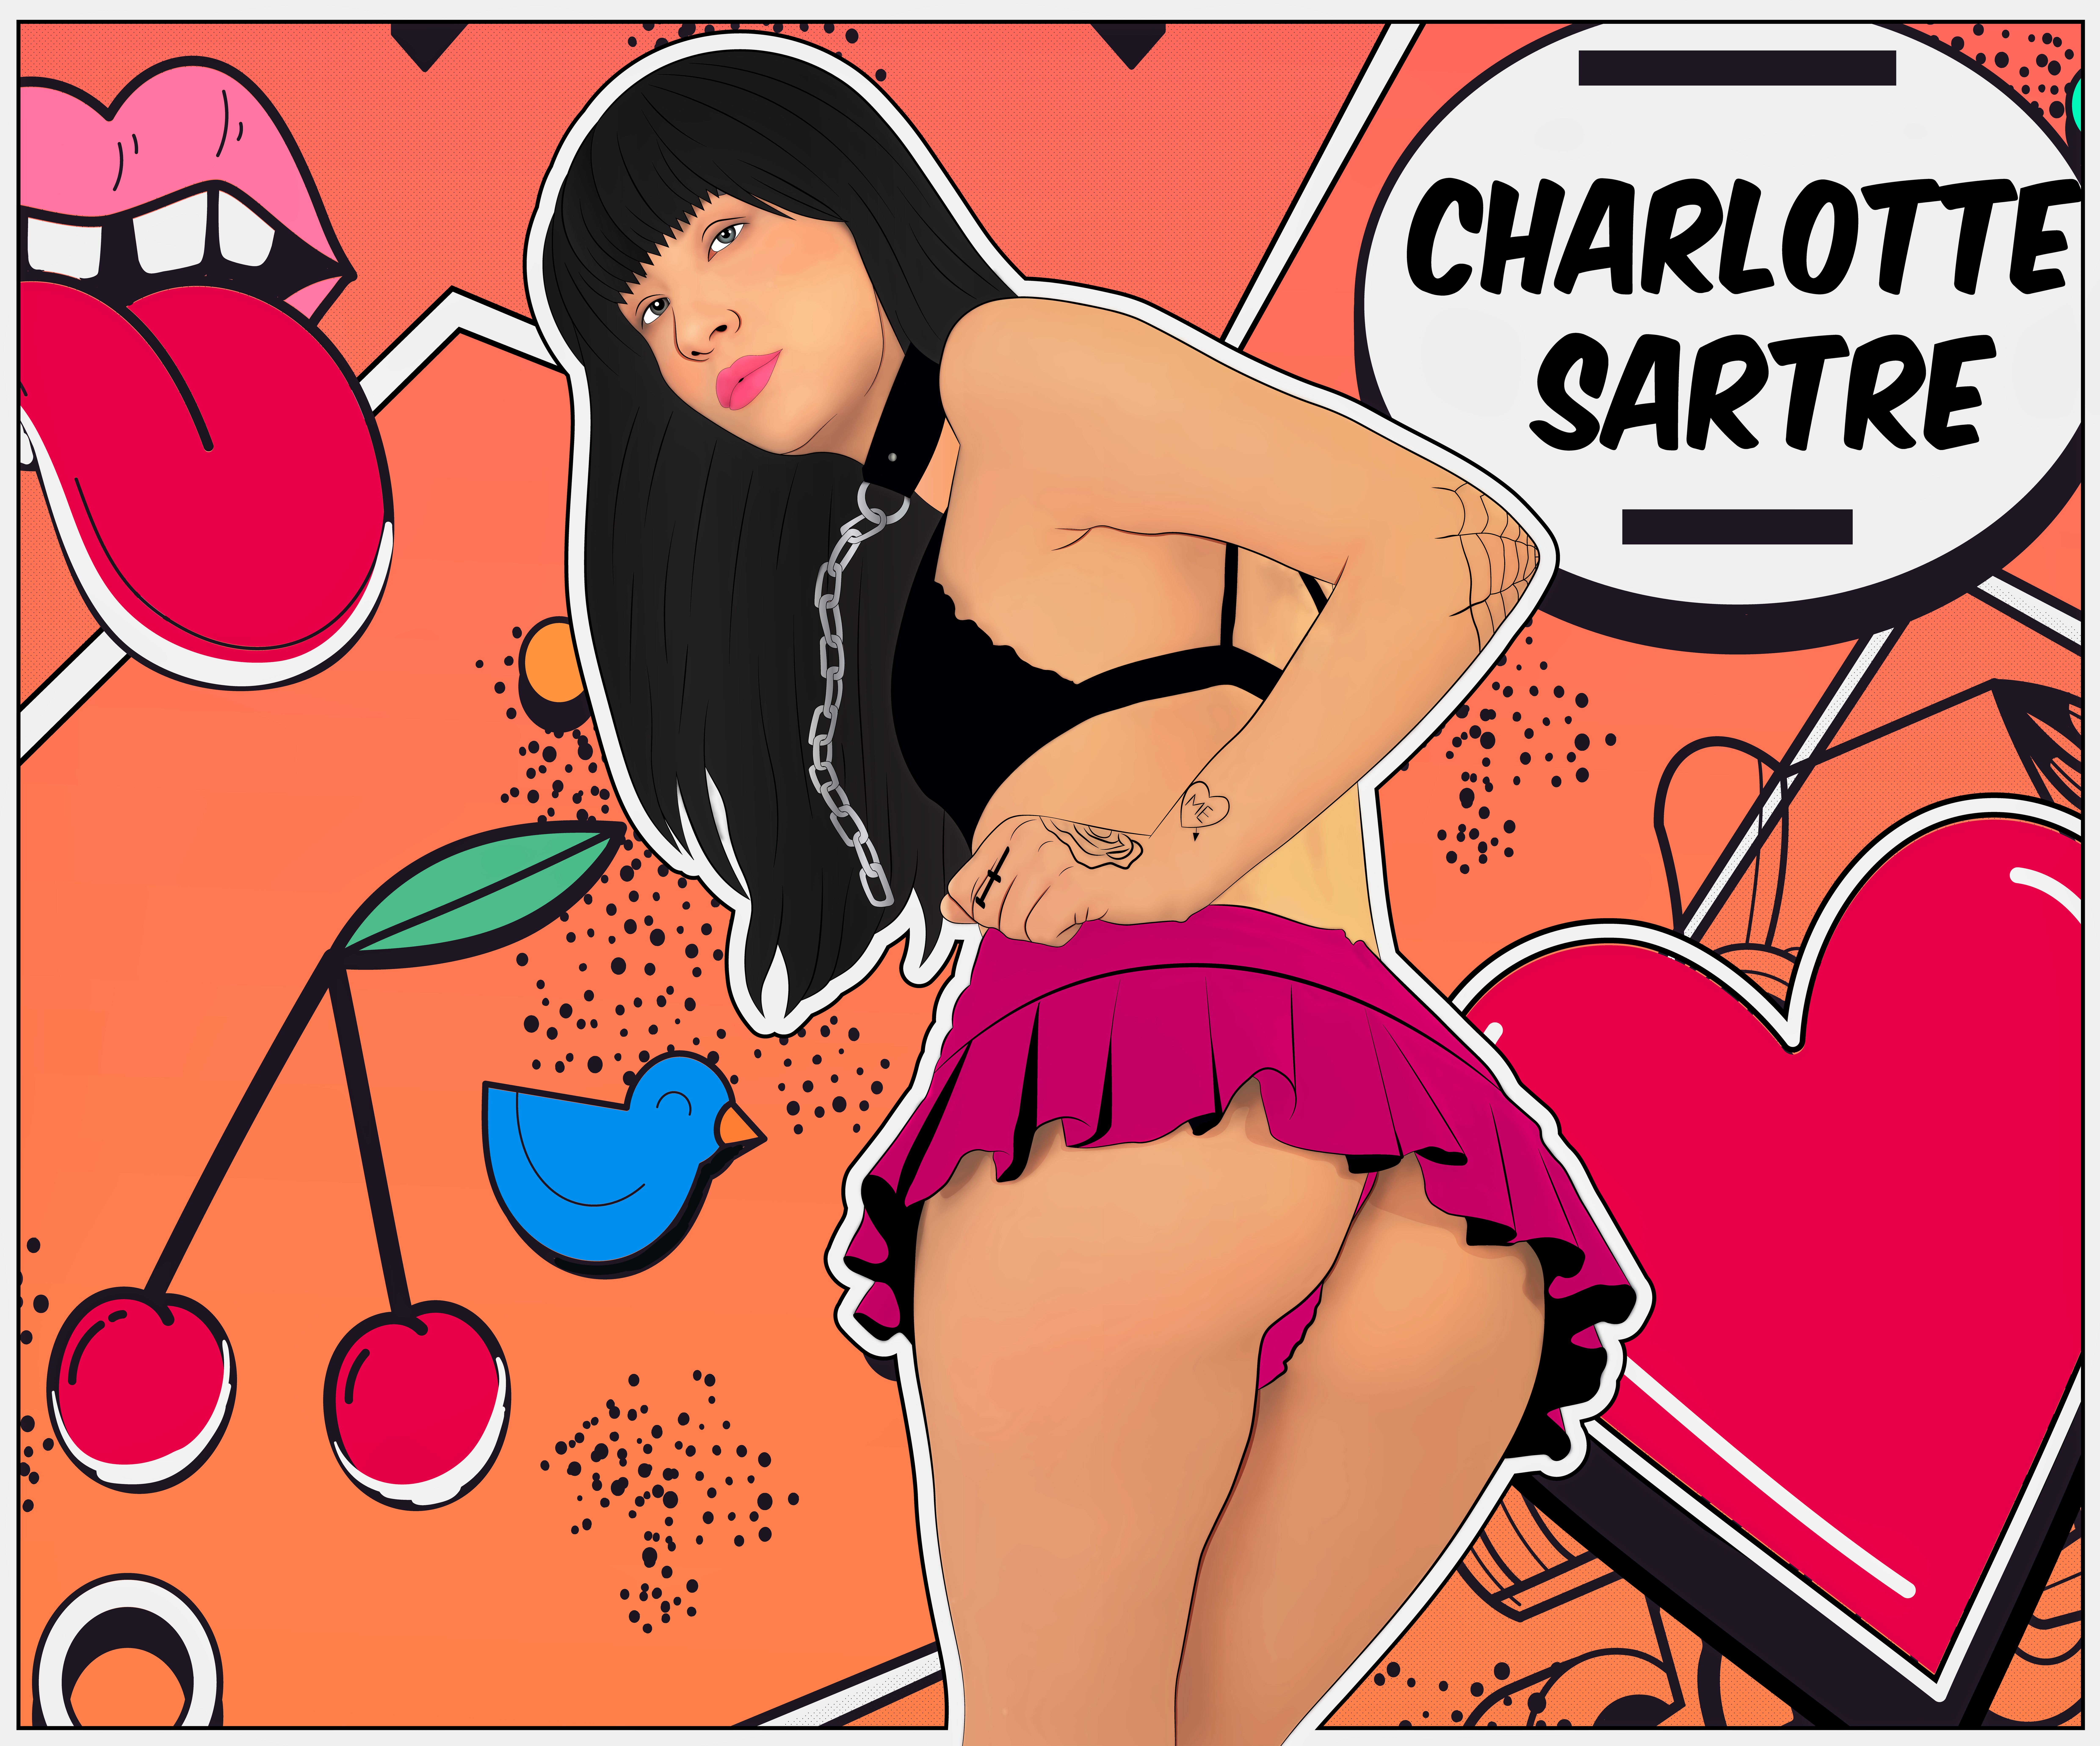 General 9920x8248 women miniskirt pornstar fan art cherries ass bra collar chains American women Charlotte Sartre